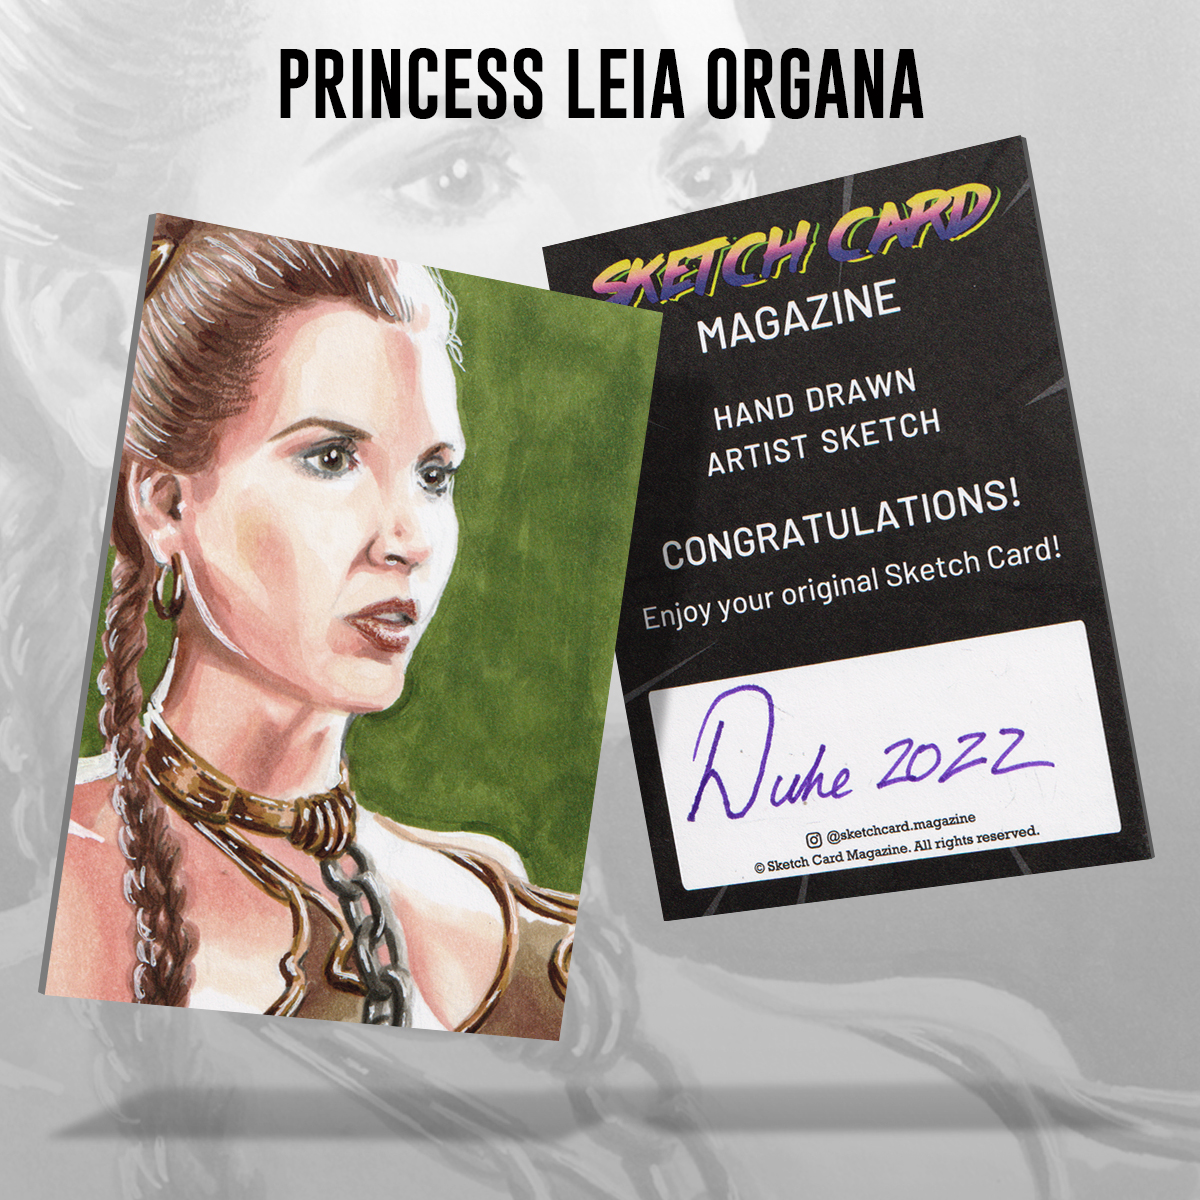 Princess Leia Organa Sketch Card by Duke